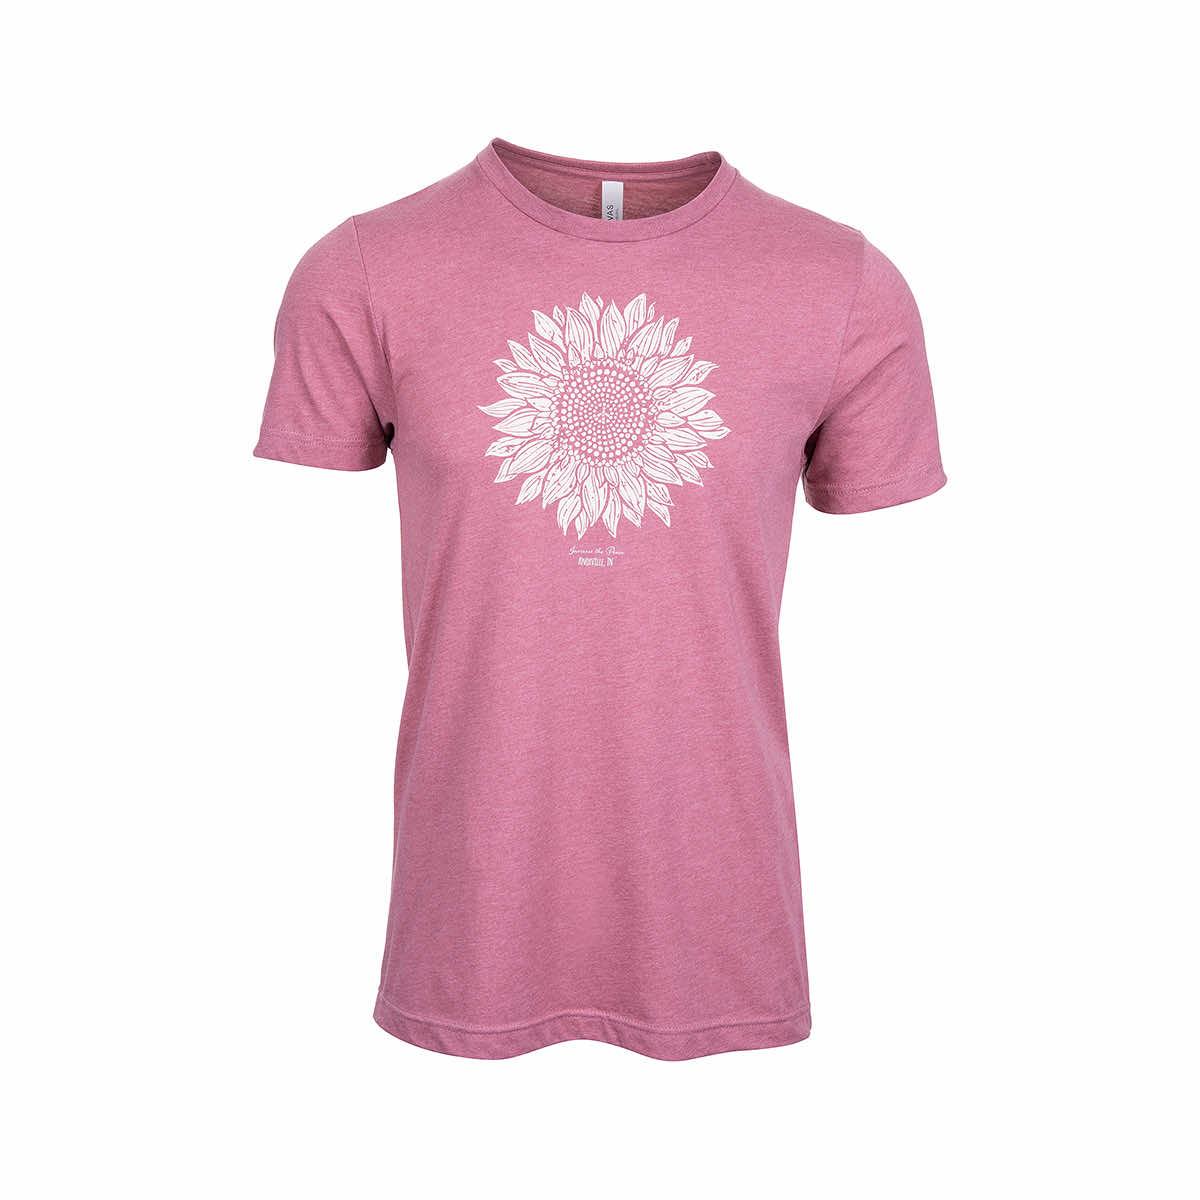  Knoxville Sunflower Short Sleeve T- Shirt